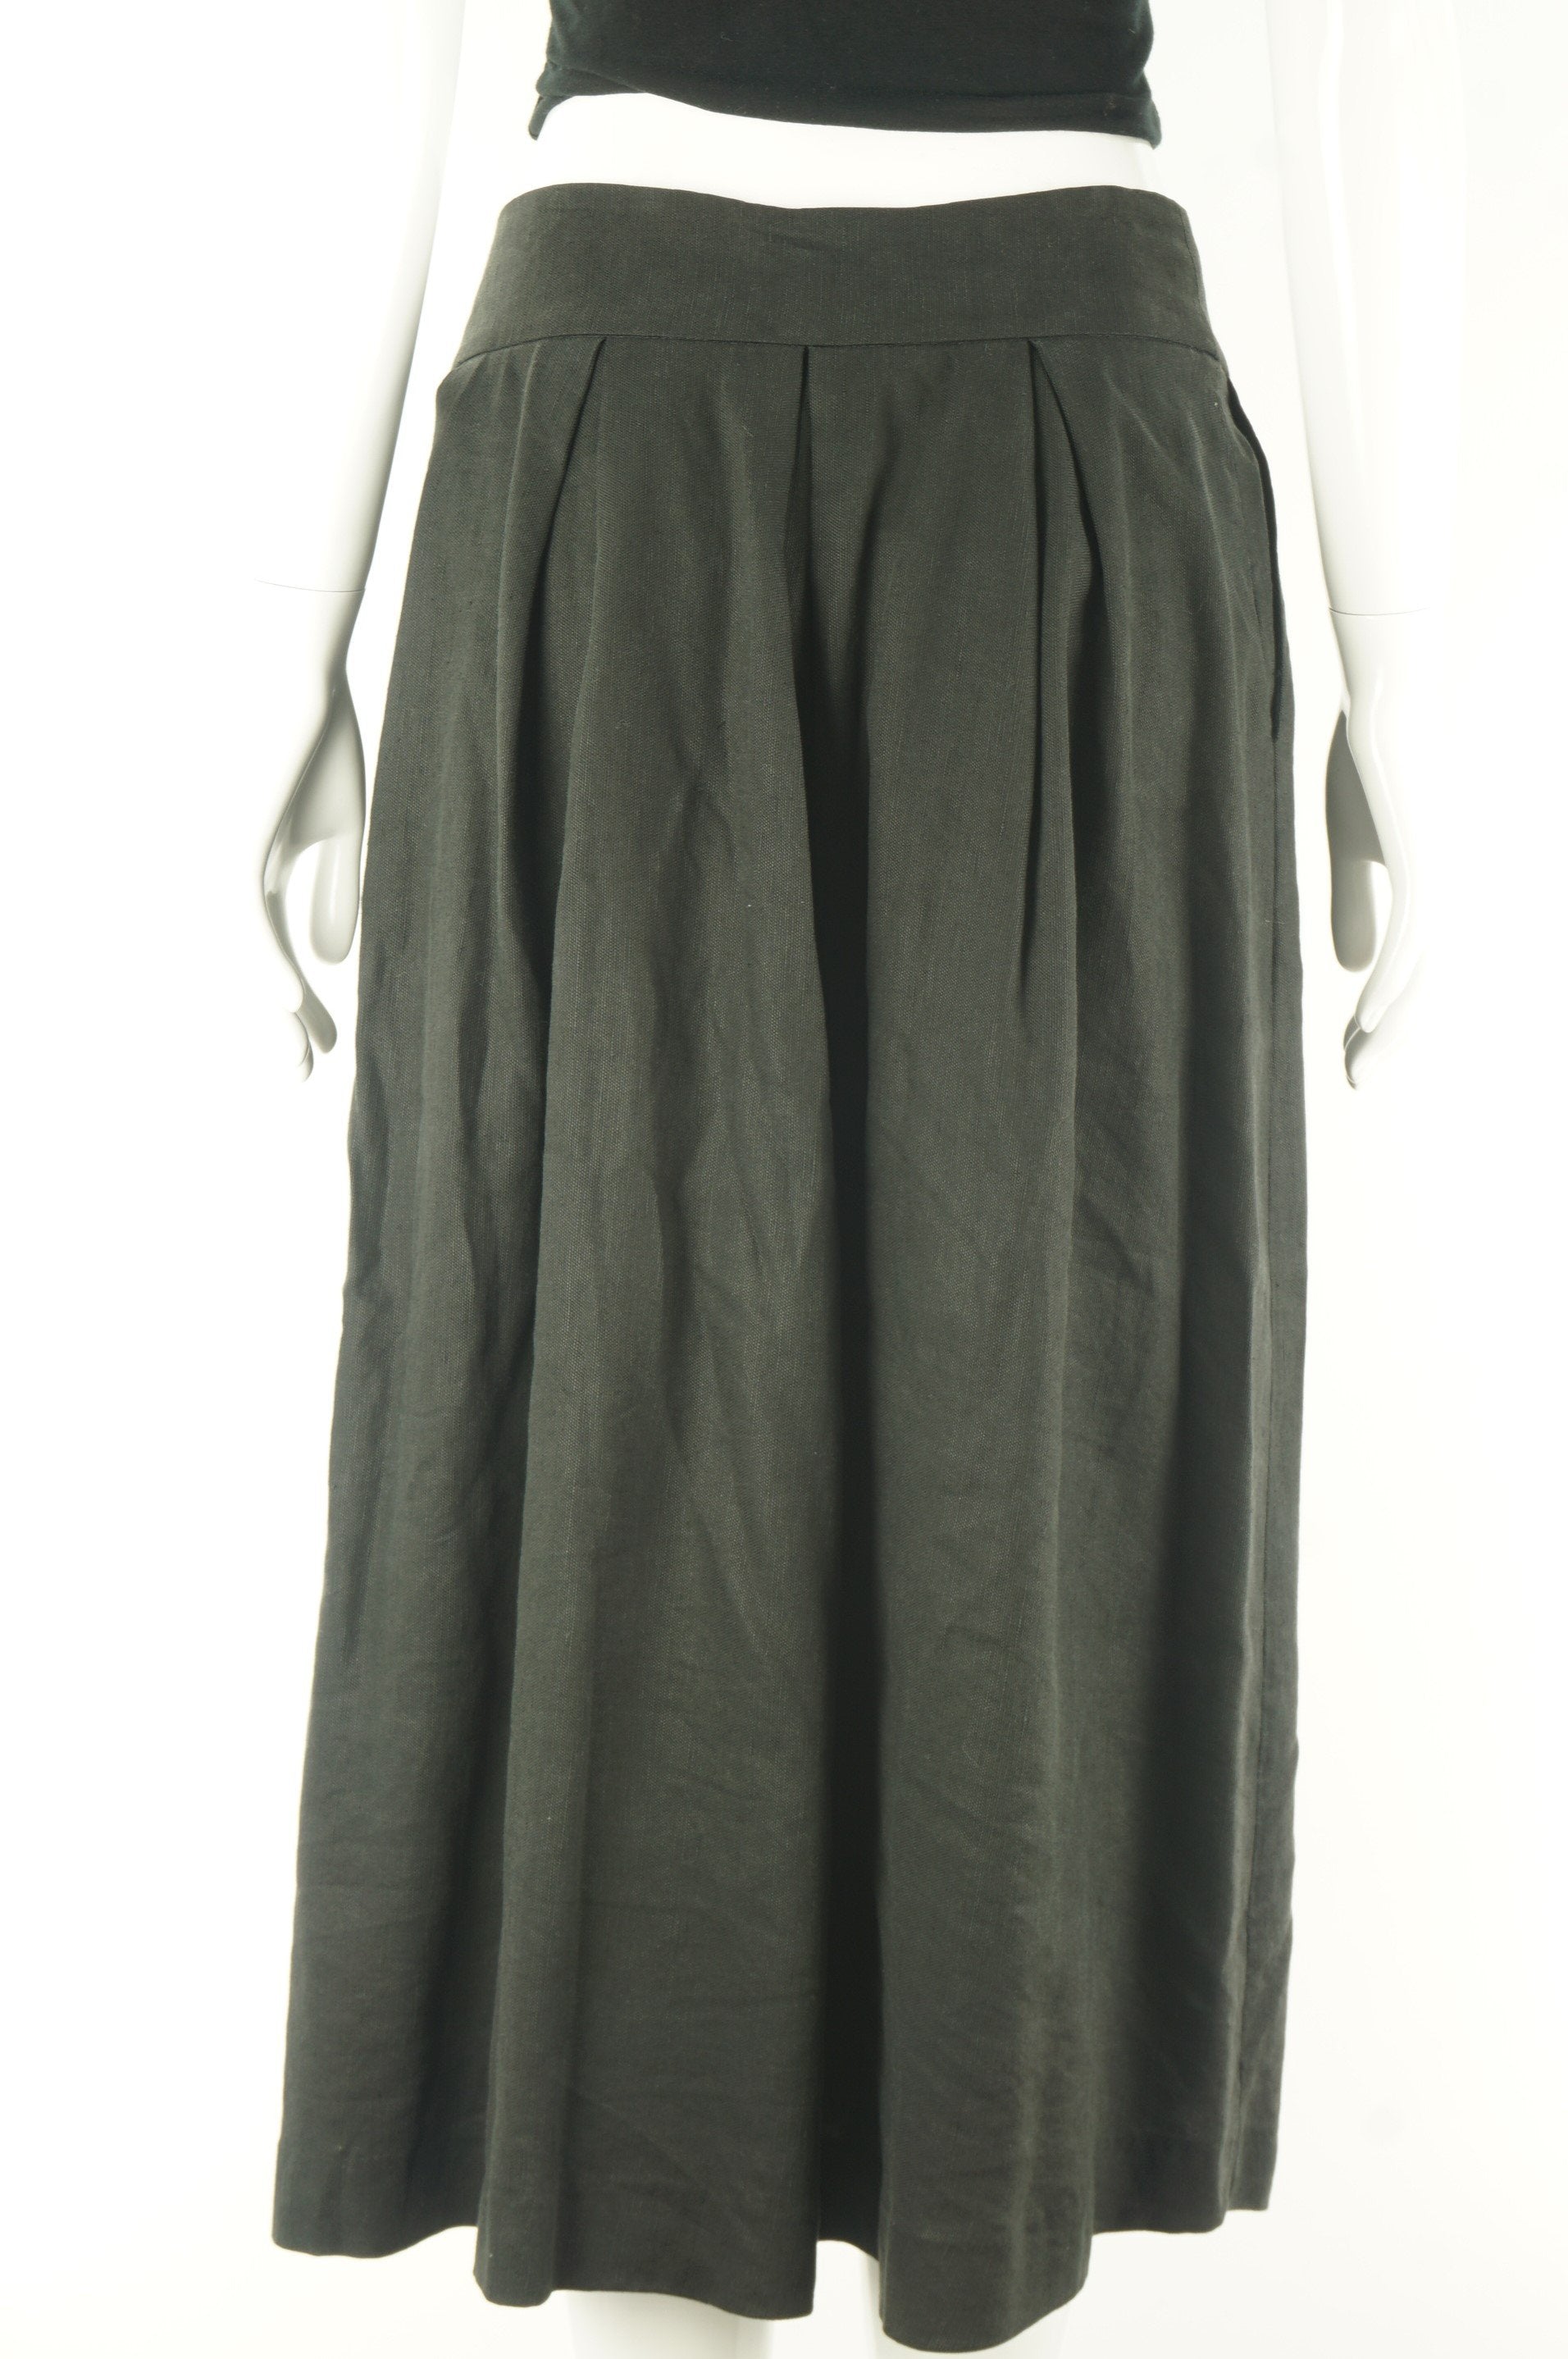 Wilfred Black Linen Long Skirt, Comfortable linen skirt with large pleats that draps down elegantly. , Black, 63% Lyocell, 37% Linen, women's Dresses & Skirts, women's Black Dresses & Skirts, Wilfred women's Dresses & Skirts, Women's linen skirt, aritzia women's linen skirt